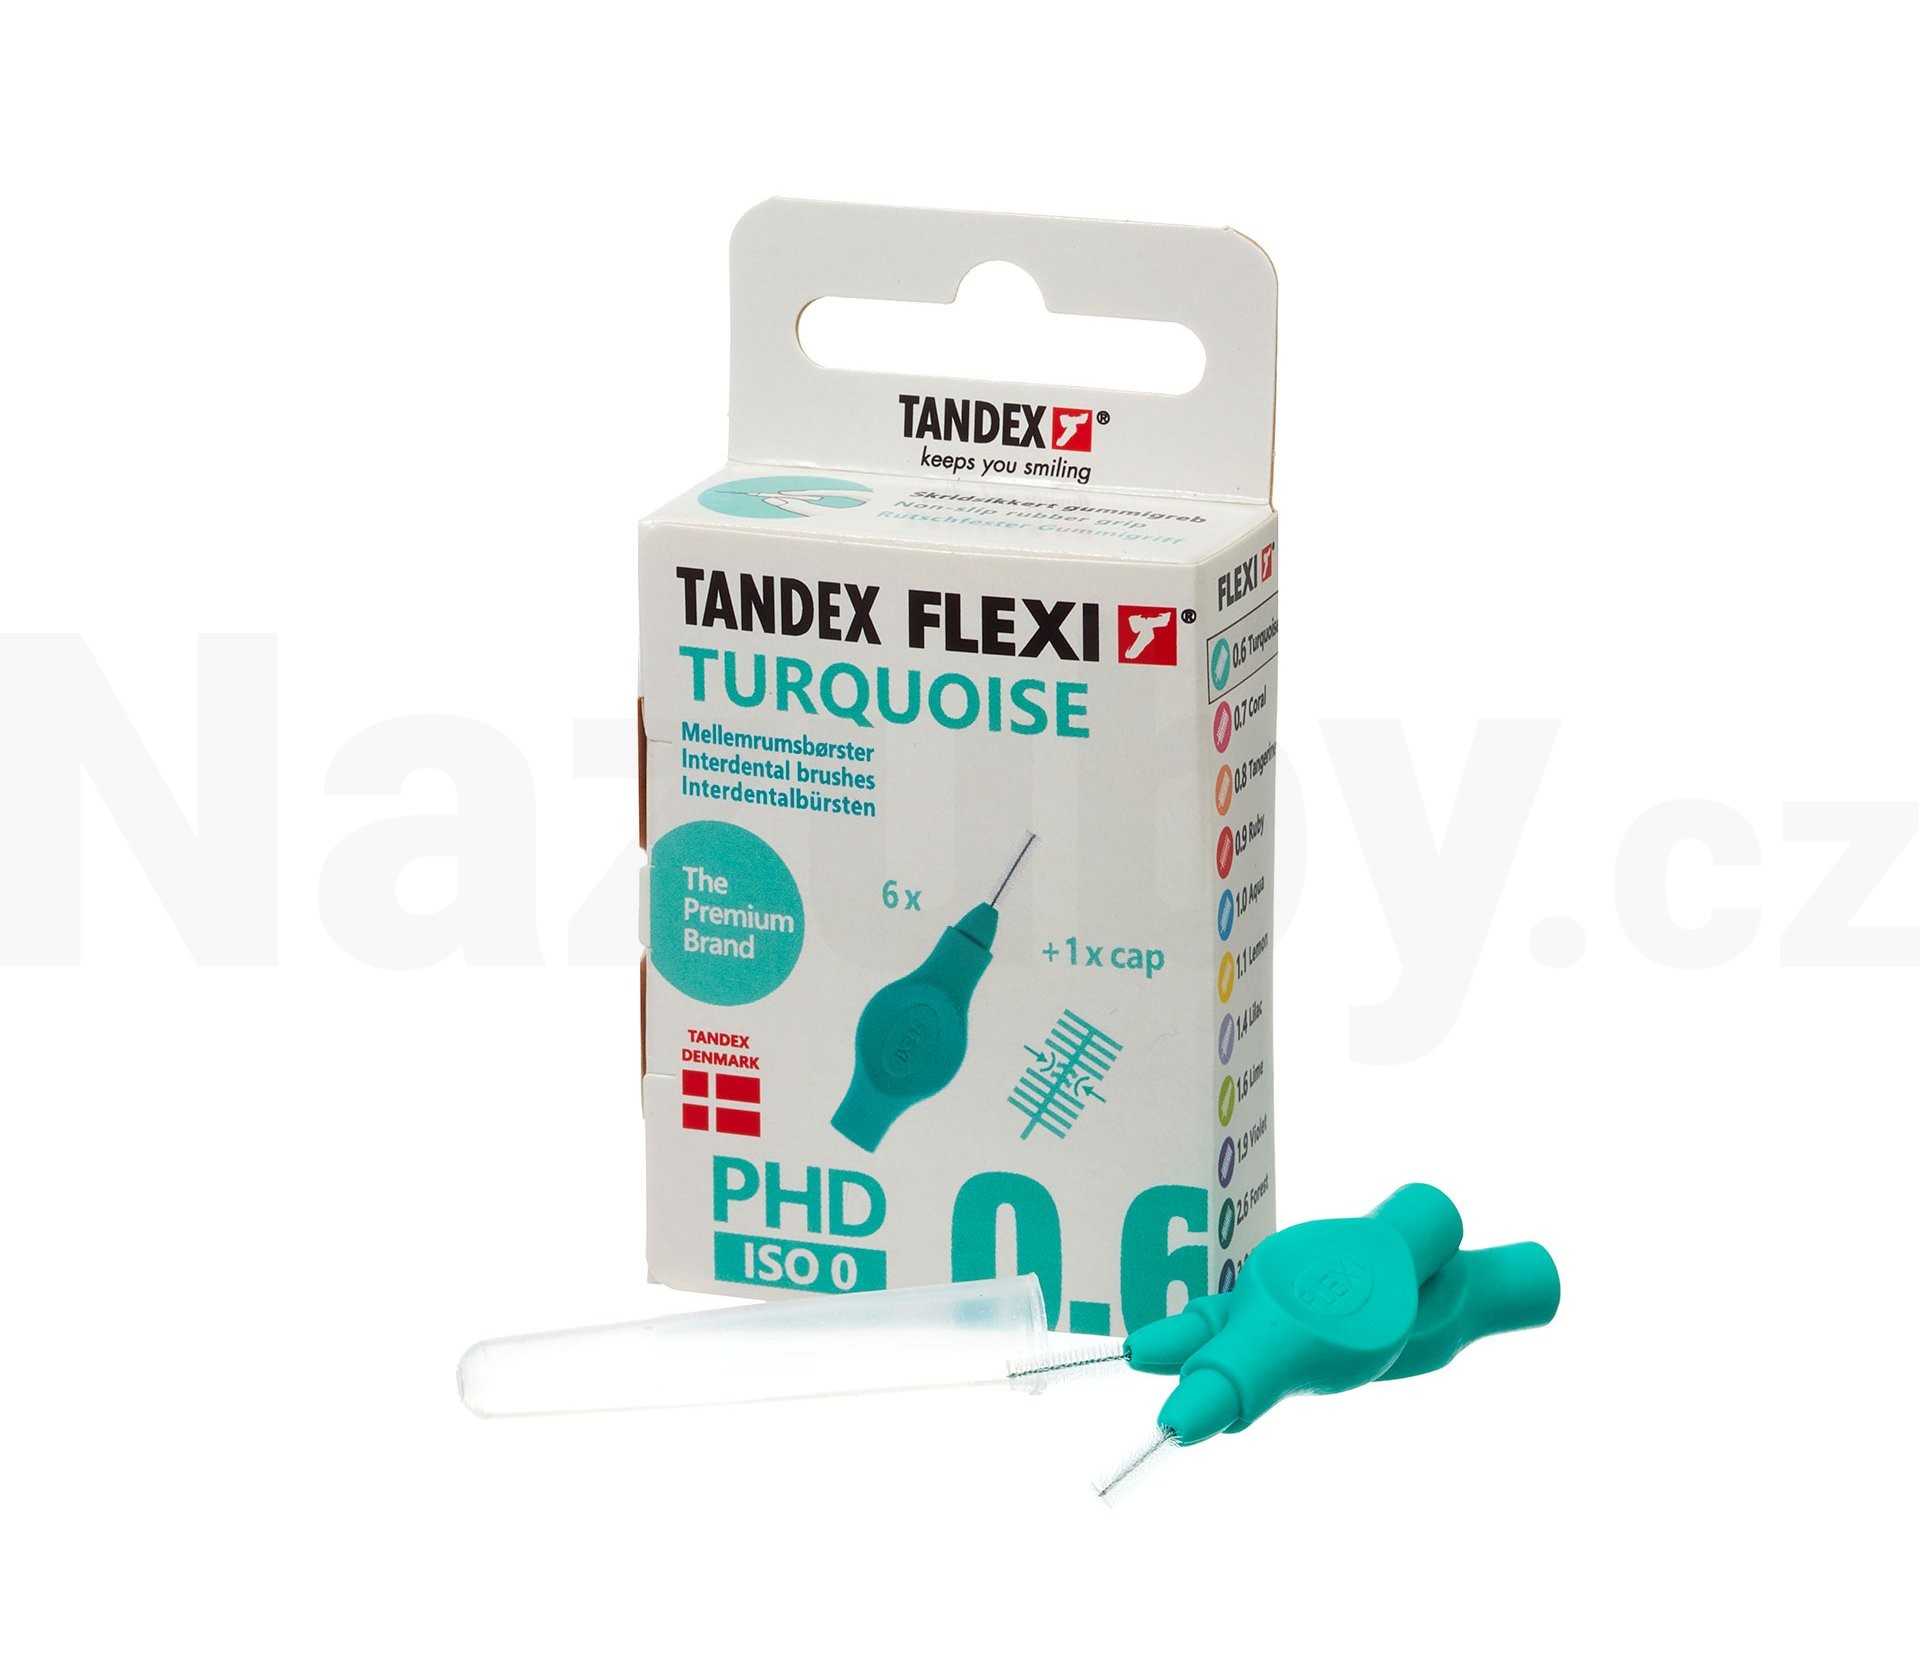 Tandex Flexi 0,6 Turquoise mezizubní kartáček 6 ks